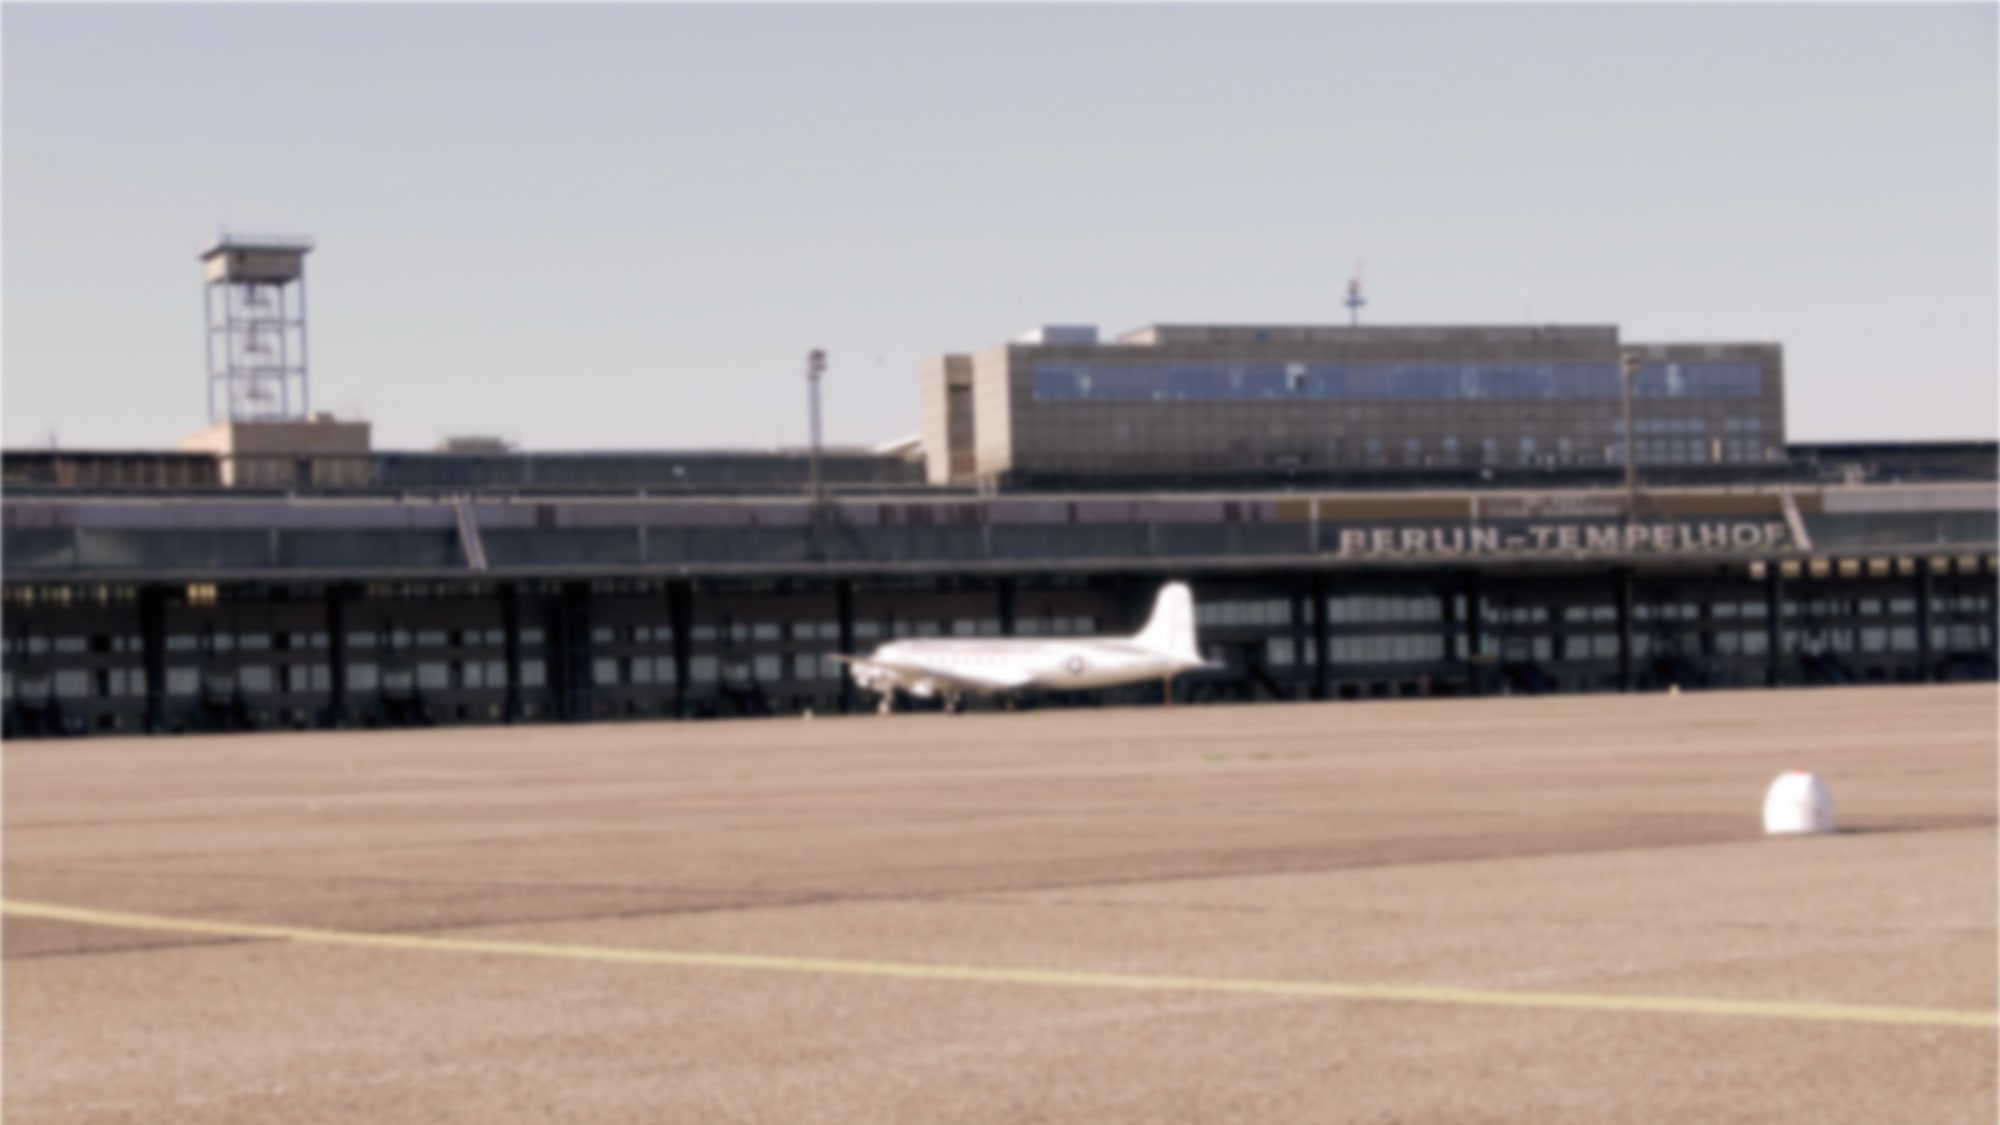 Berlin Tempelhof, historic airport terminal